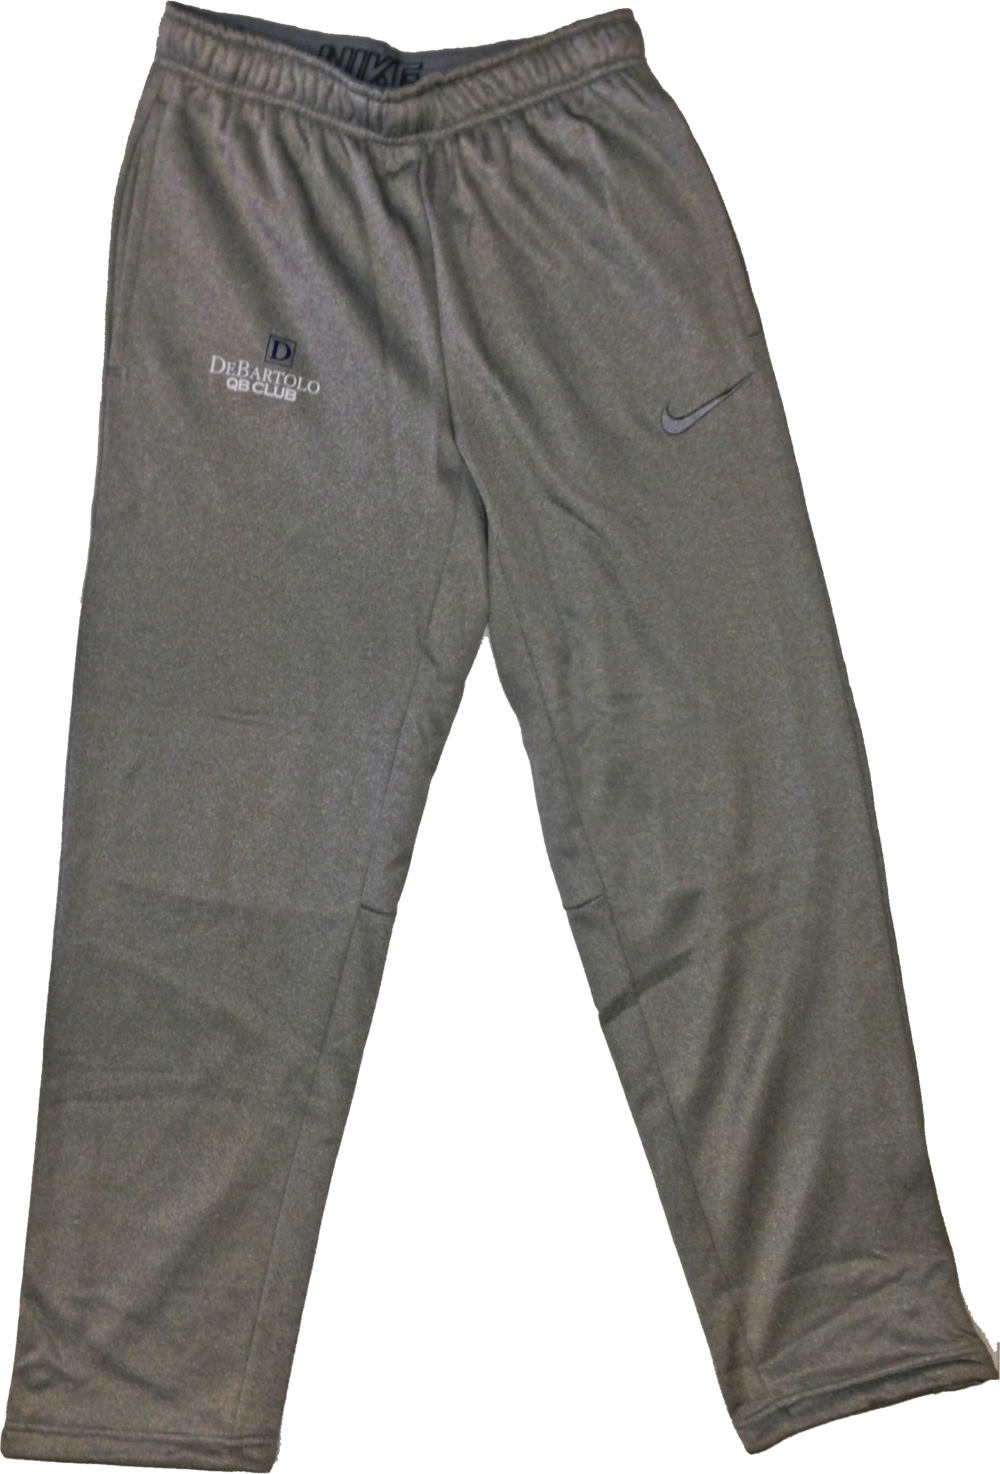 Grey Debartolo Qb Club Sweatpants - Pocket (1000x1474), Png Download